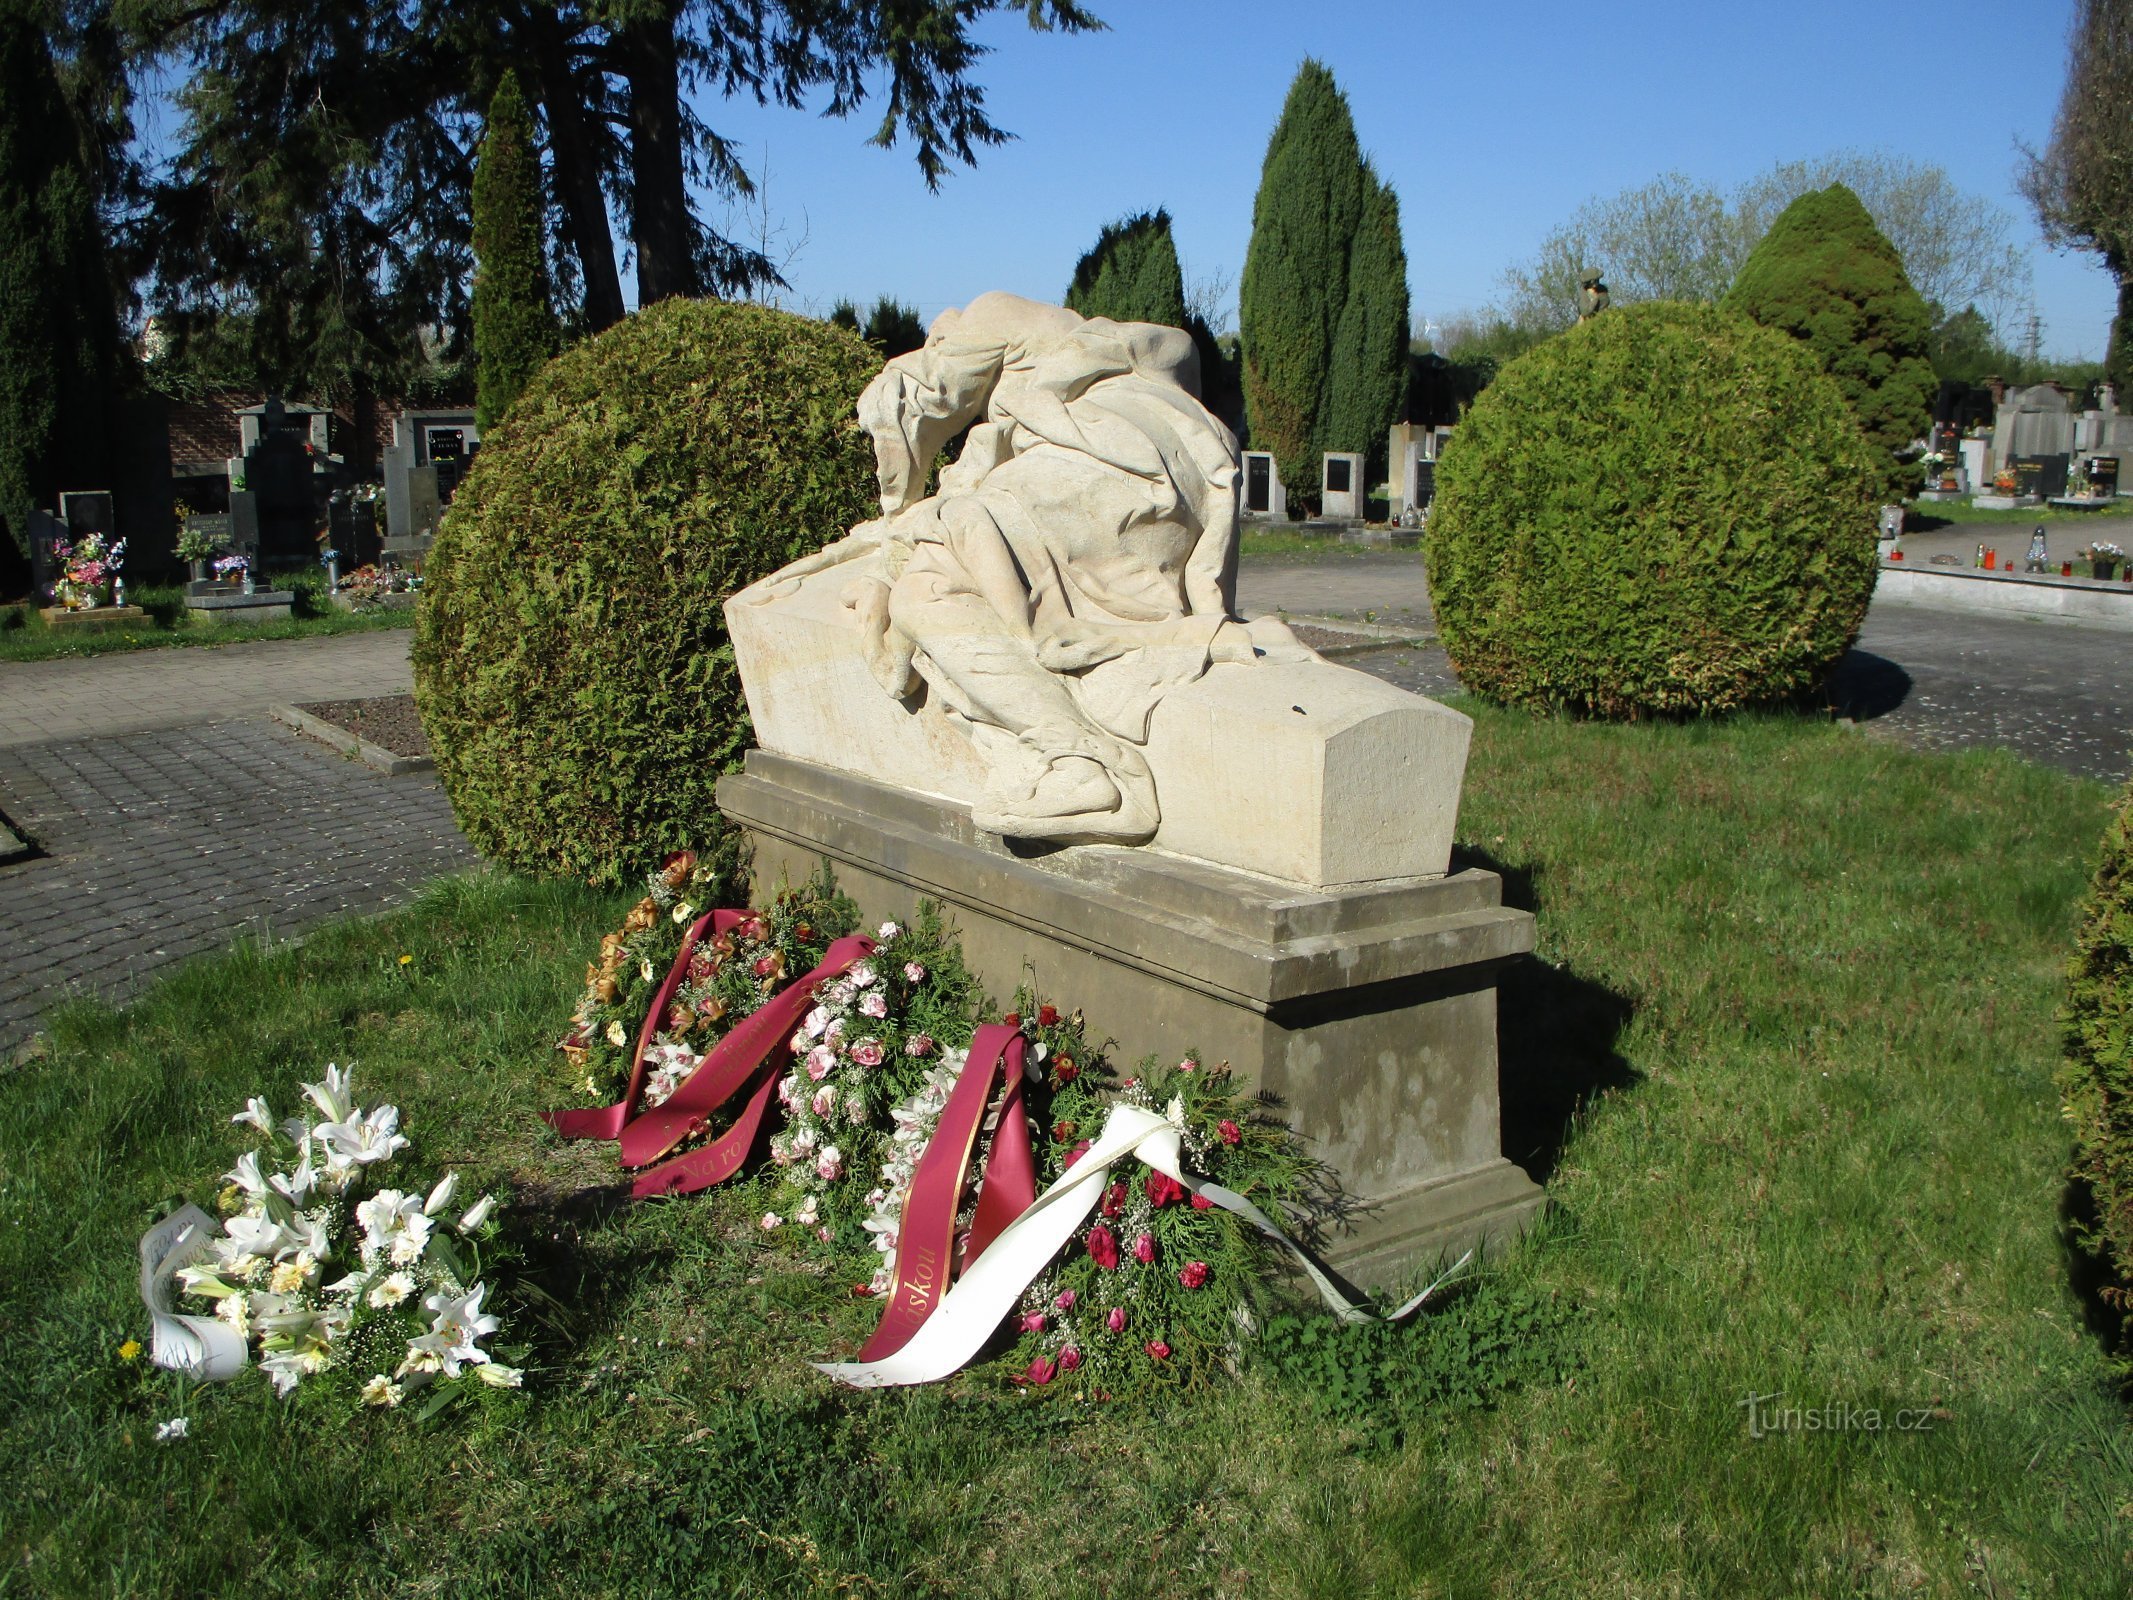 Statuia „Femei care plâng” (Jaroměř, 22.4.2020)